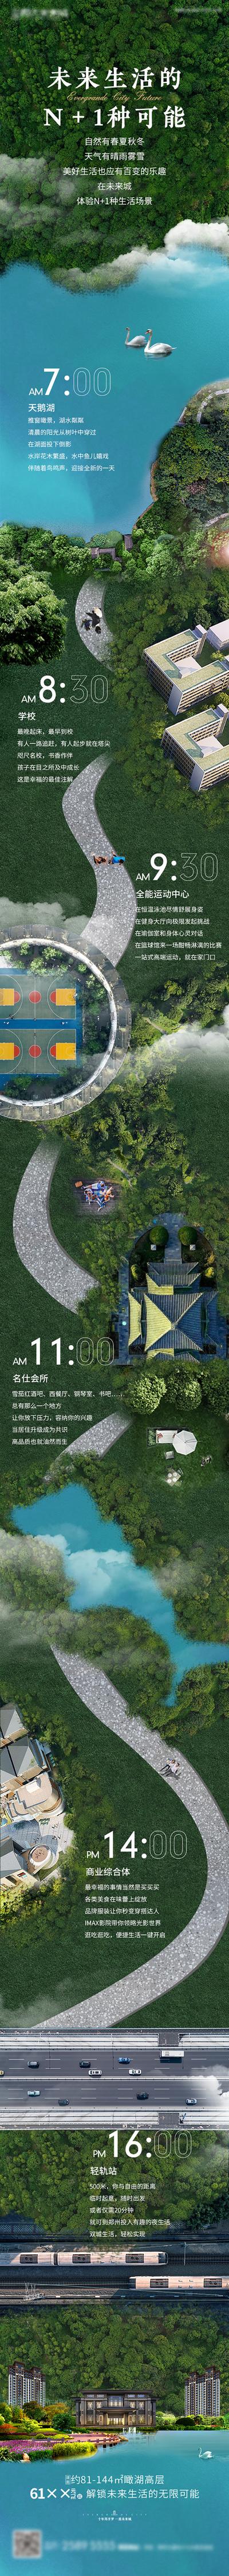 南门网 海报 长图 房地产 24小时 生活场景  价值点 合成